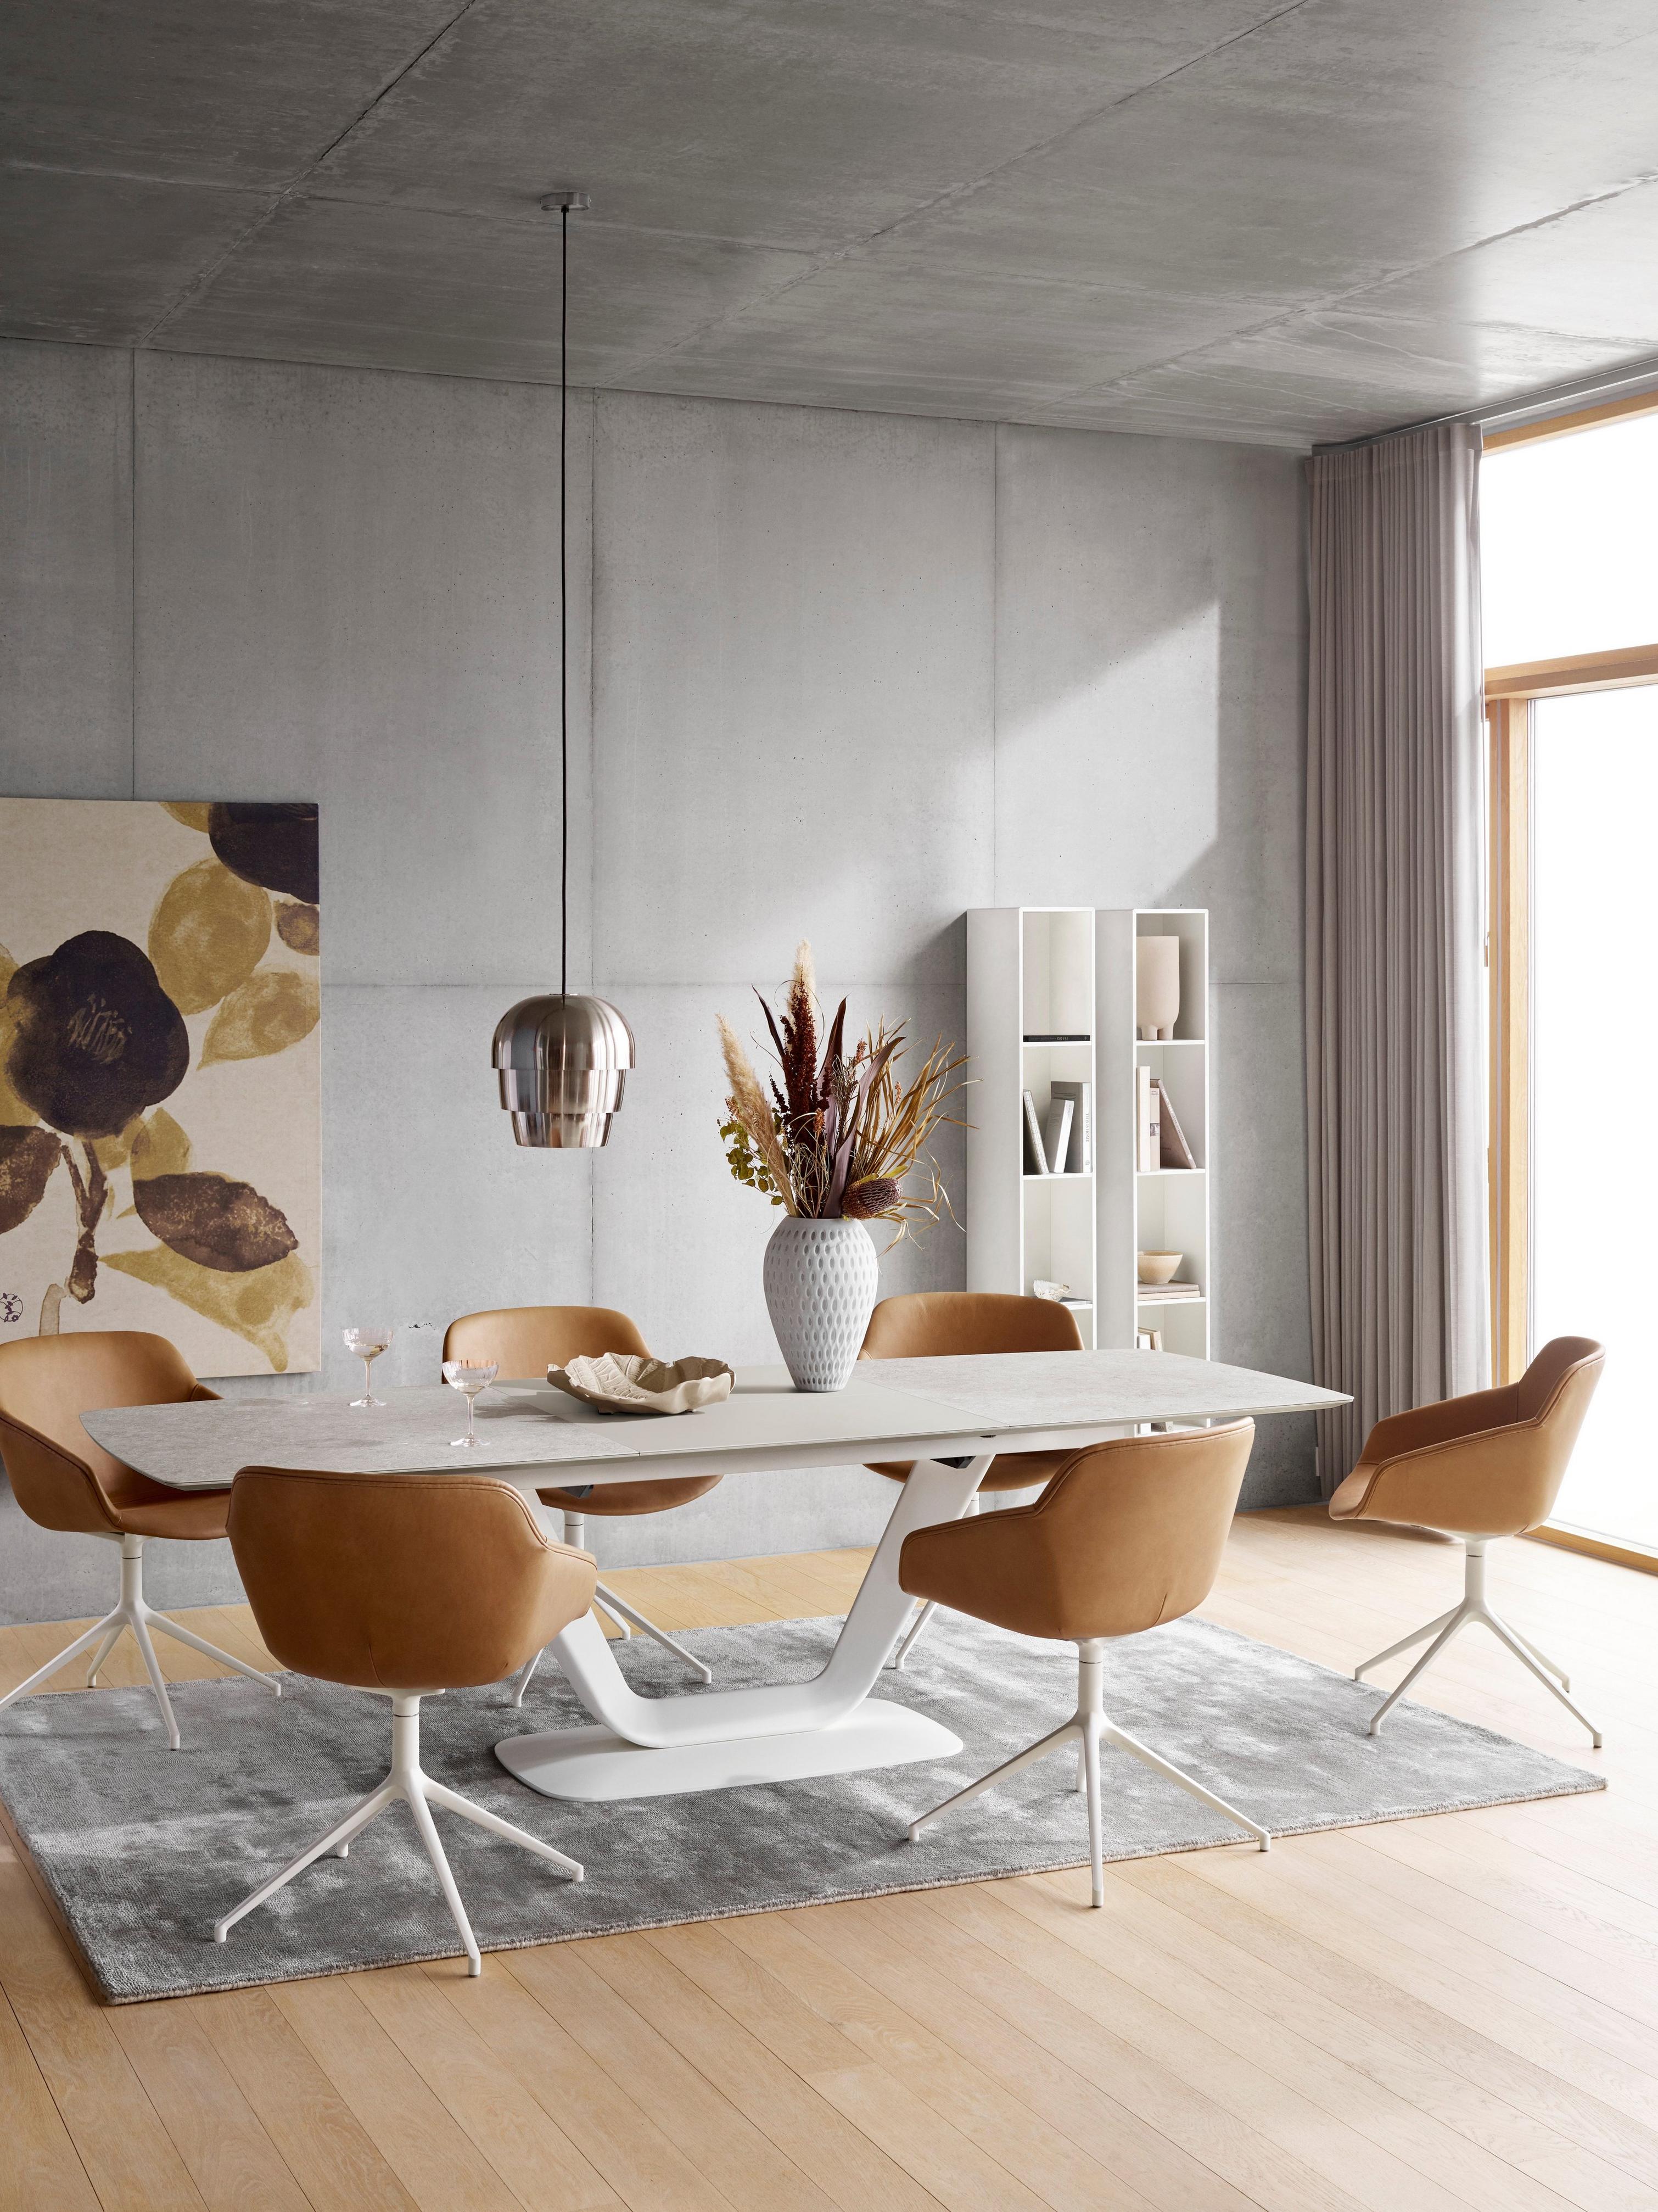 Ruokailutila, jossa on ruskeat tuolit, valkoinen pöytä, riippuvalaisin ja harmaa matto, taidetta ja hyllyjä.